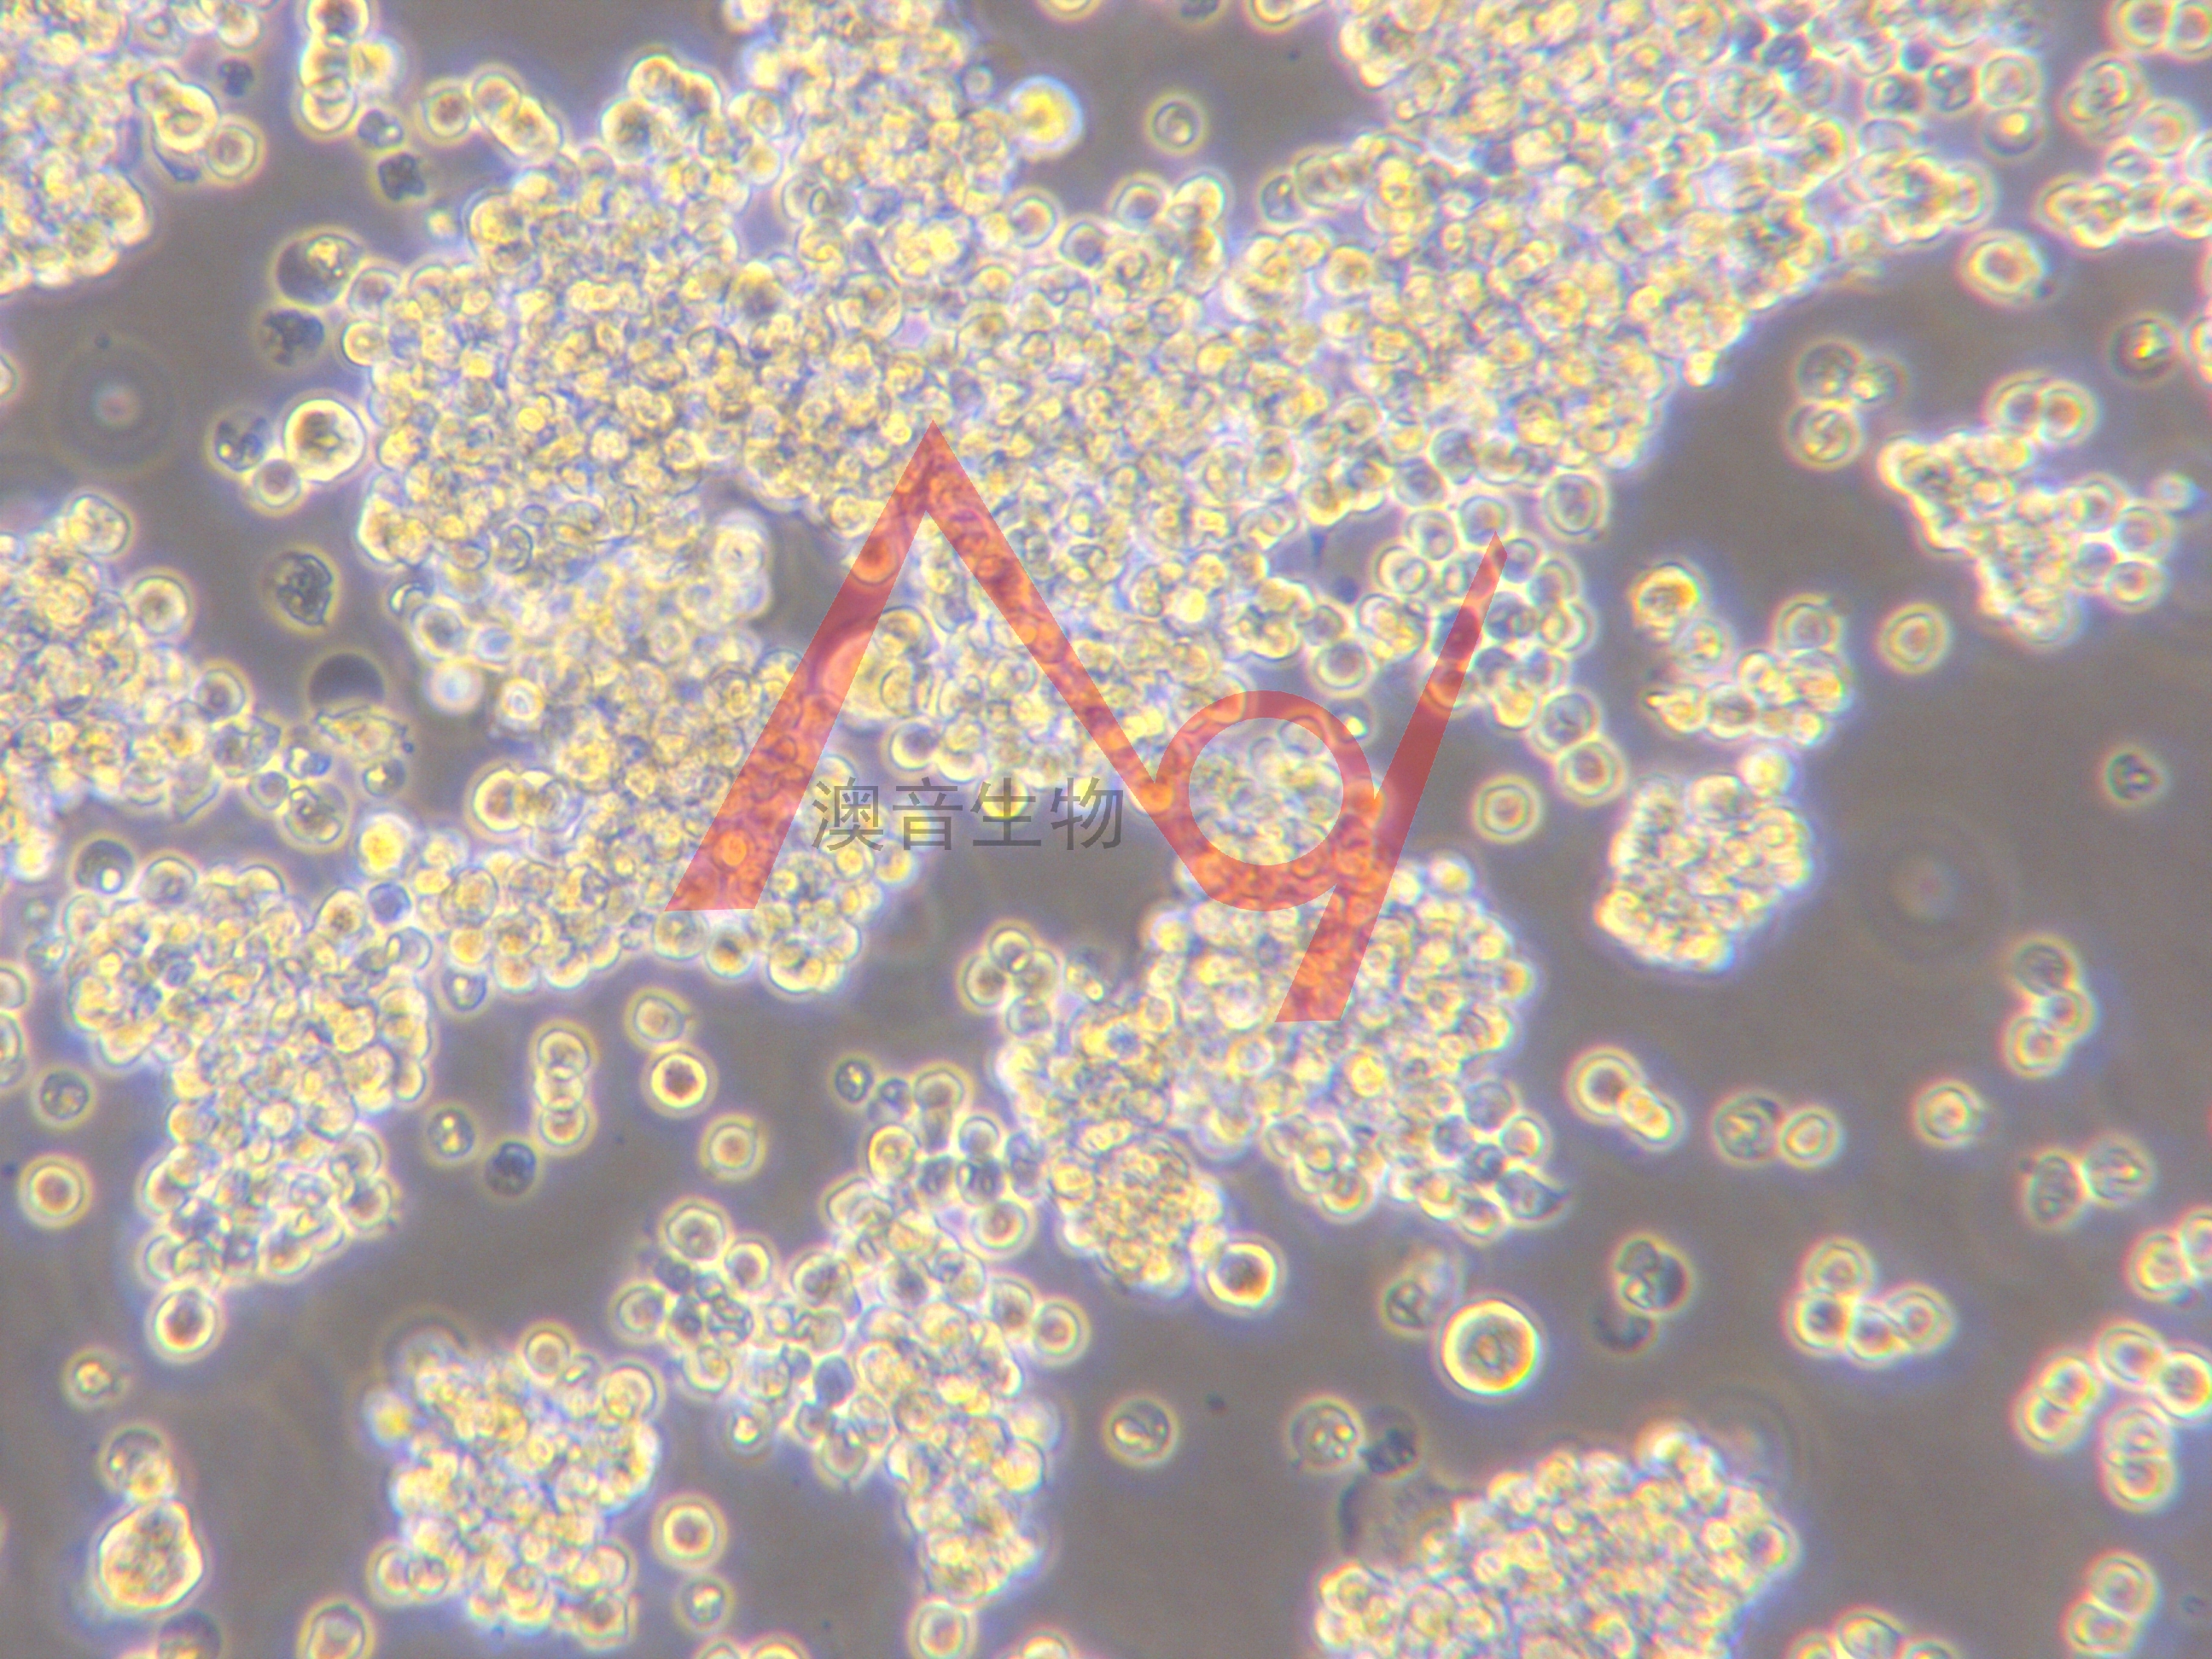 Ana-1[ANA-1; ANA1]小鼠巨噬细胞